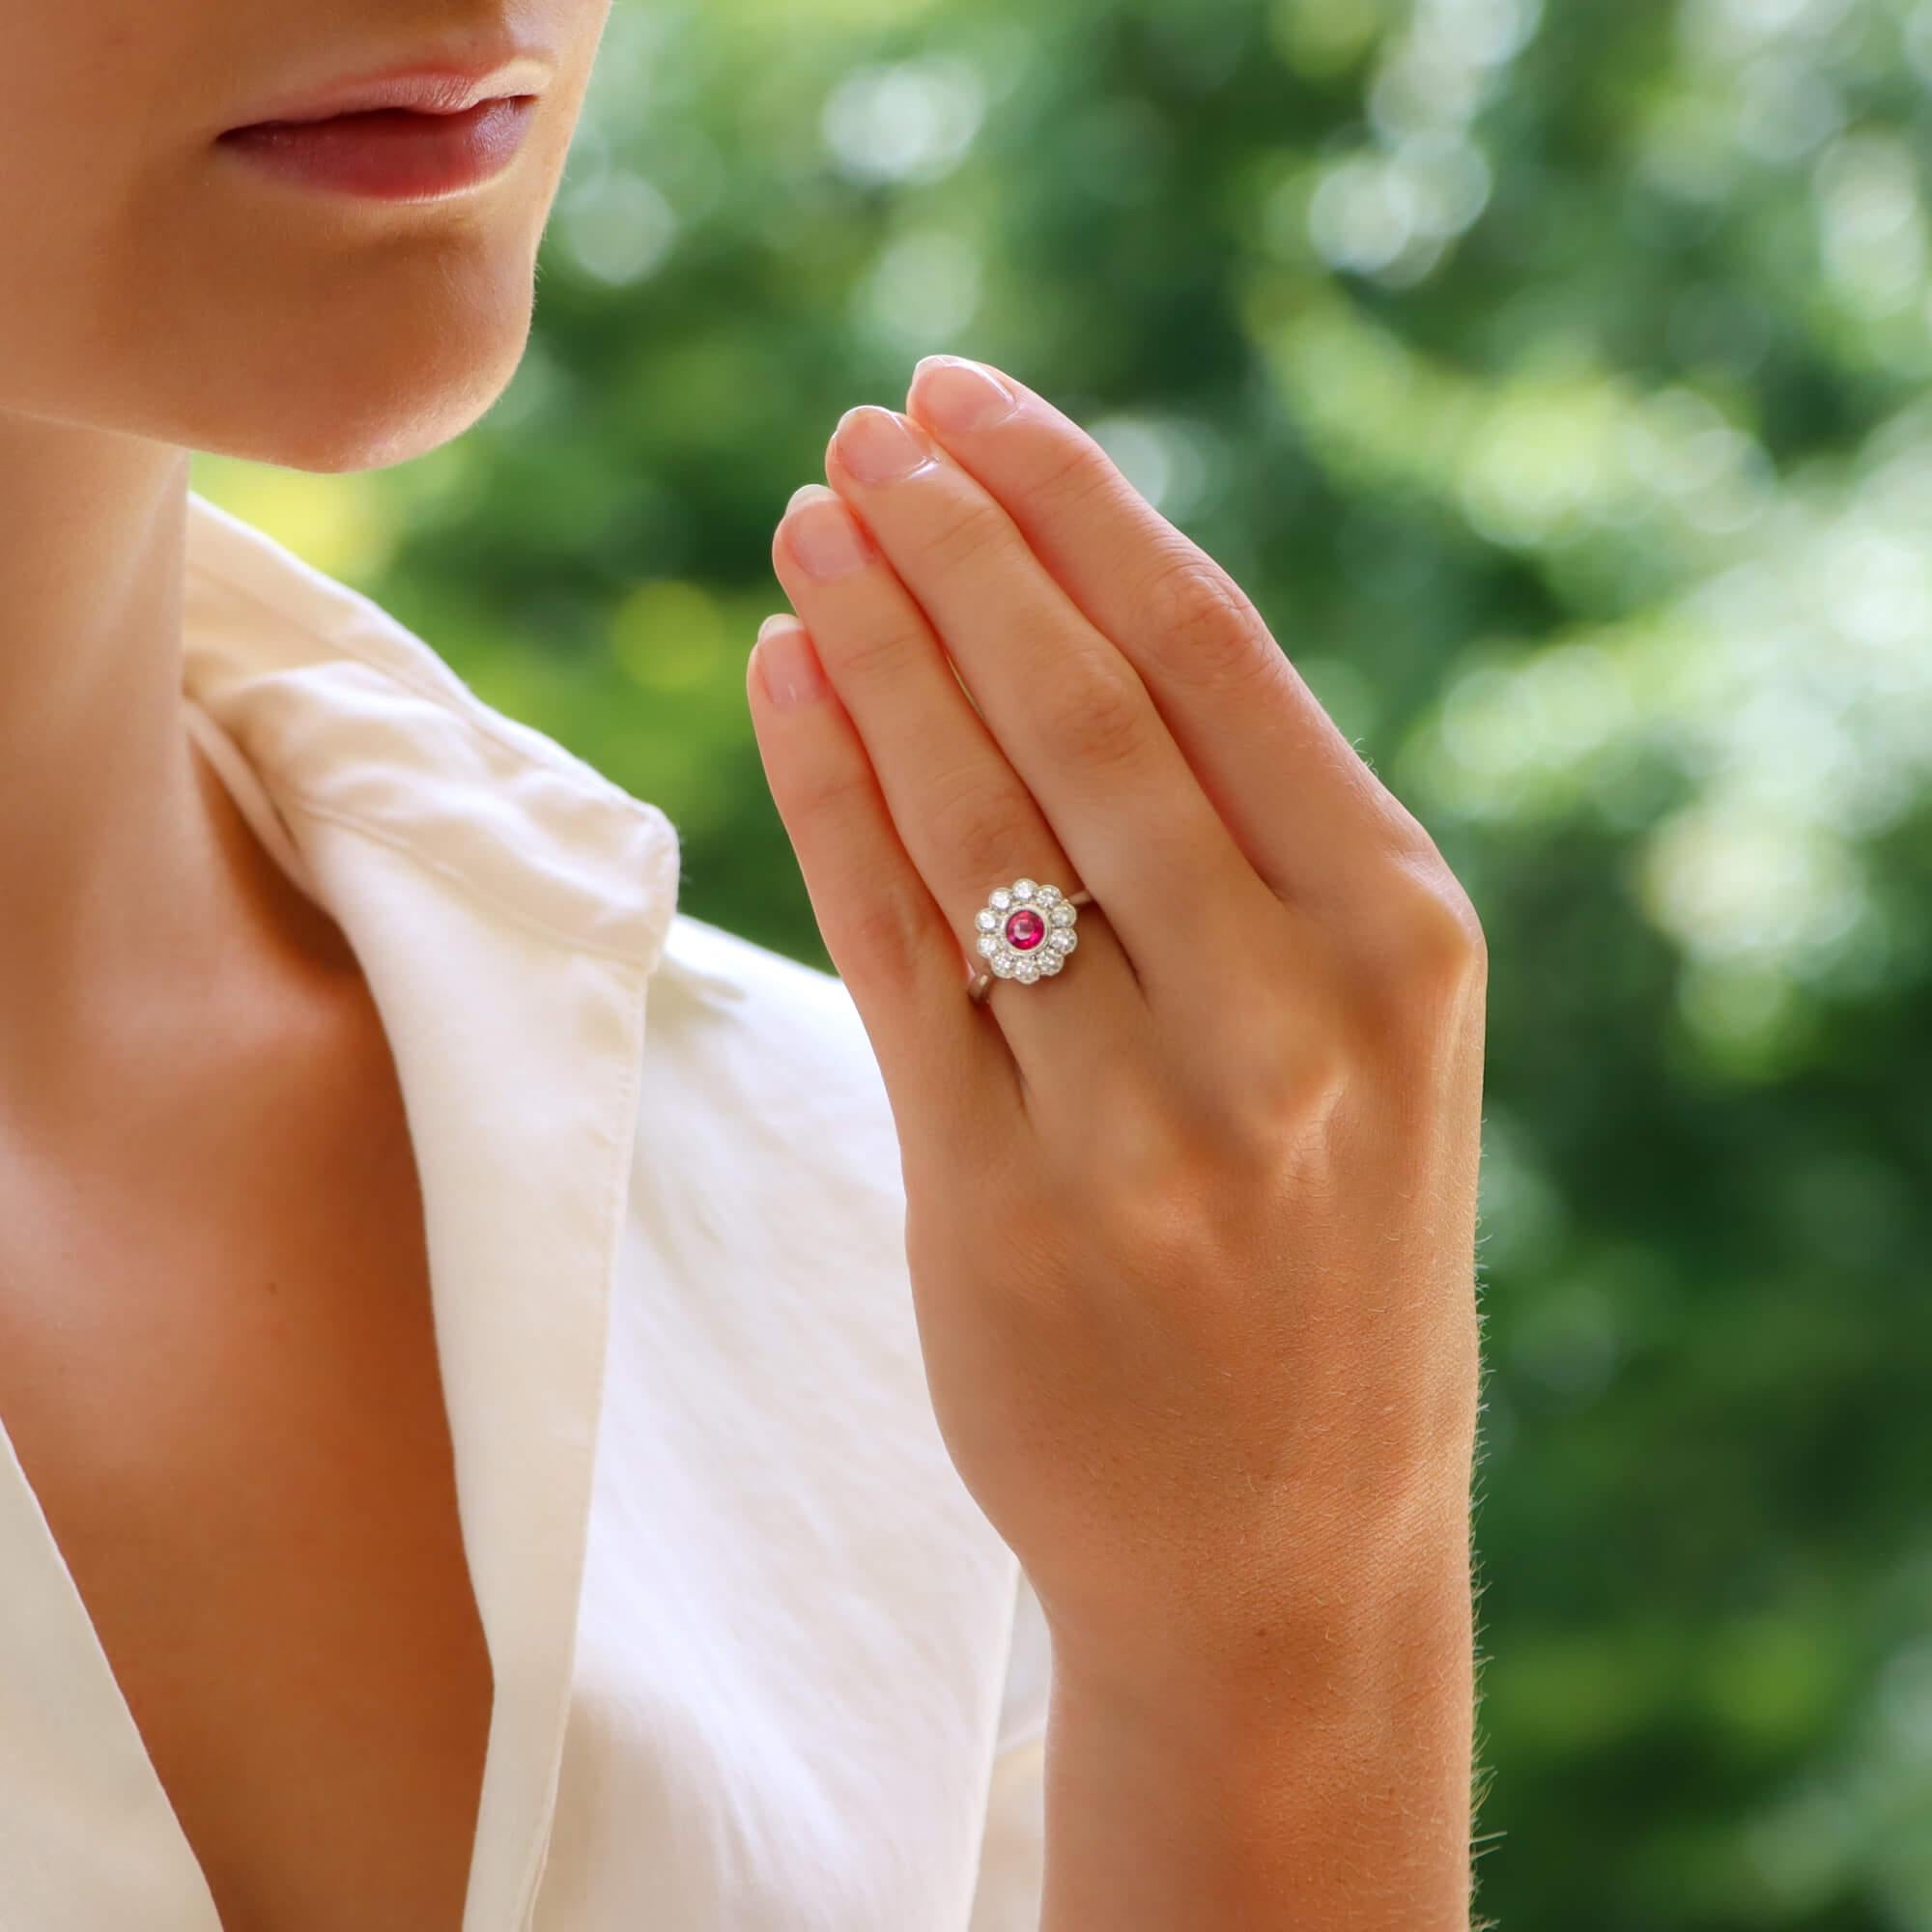 Ein wunderschöner Verlobungsring mit Rubin und Diamant in 18 Karat Weißgold. 

Der Ring ist überwiegend mit einem leuchtenden rosafarbenen Rubin im Rundschliff besetzt, der in die Mitte gerieben ist. Der Rubin wird von einem Cluster aus zehn